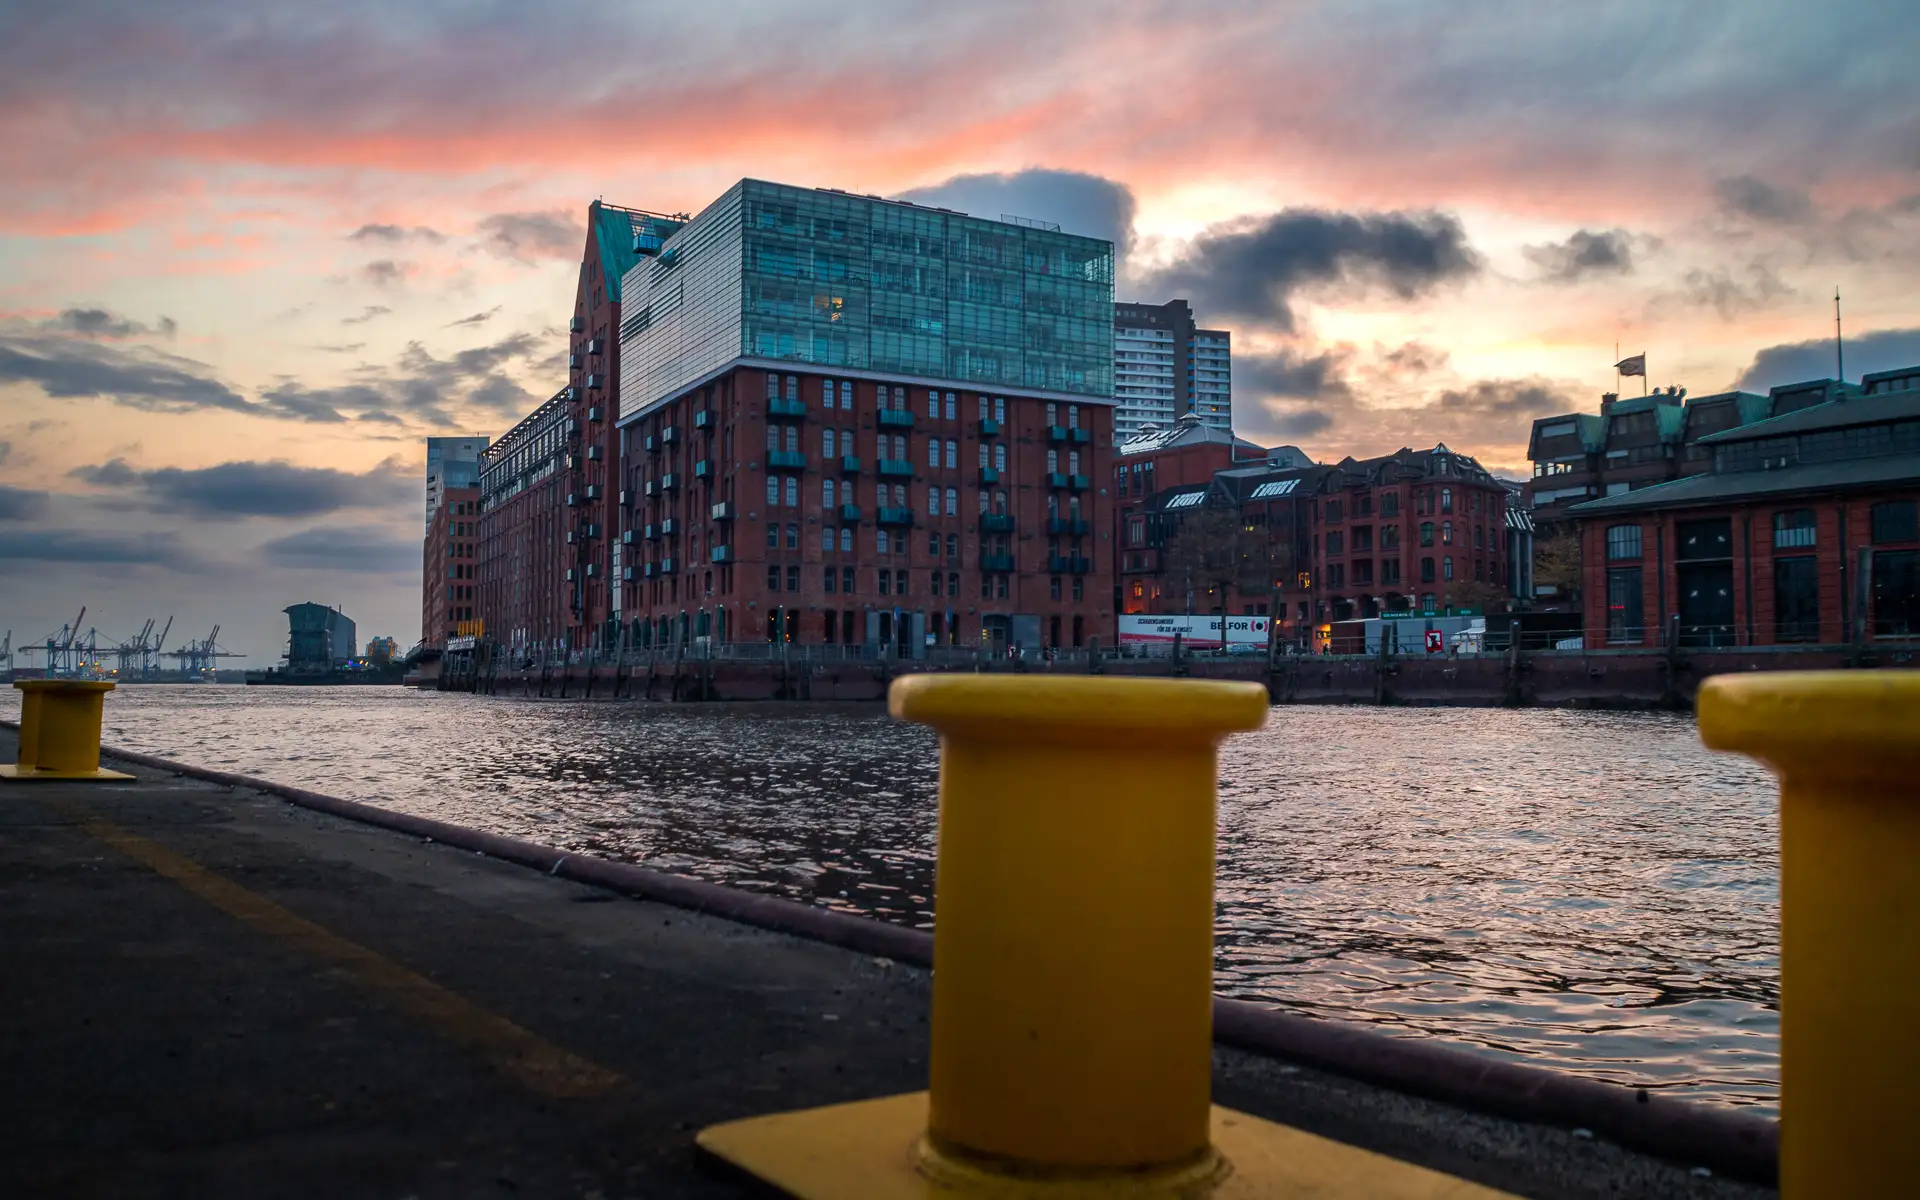 Bild von Hamburg am Fischmarkt mit Poller und Hafen im Hintergrund